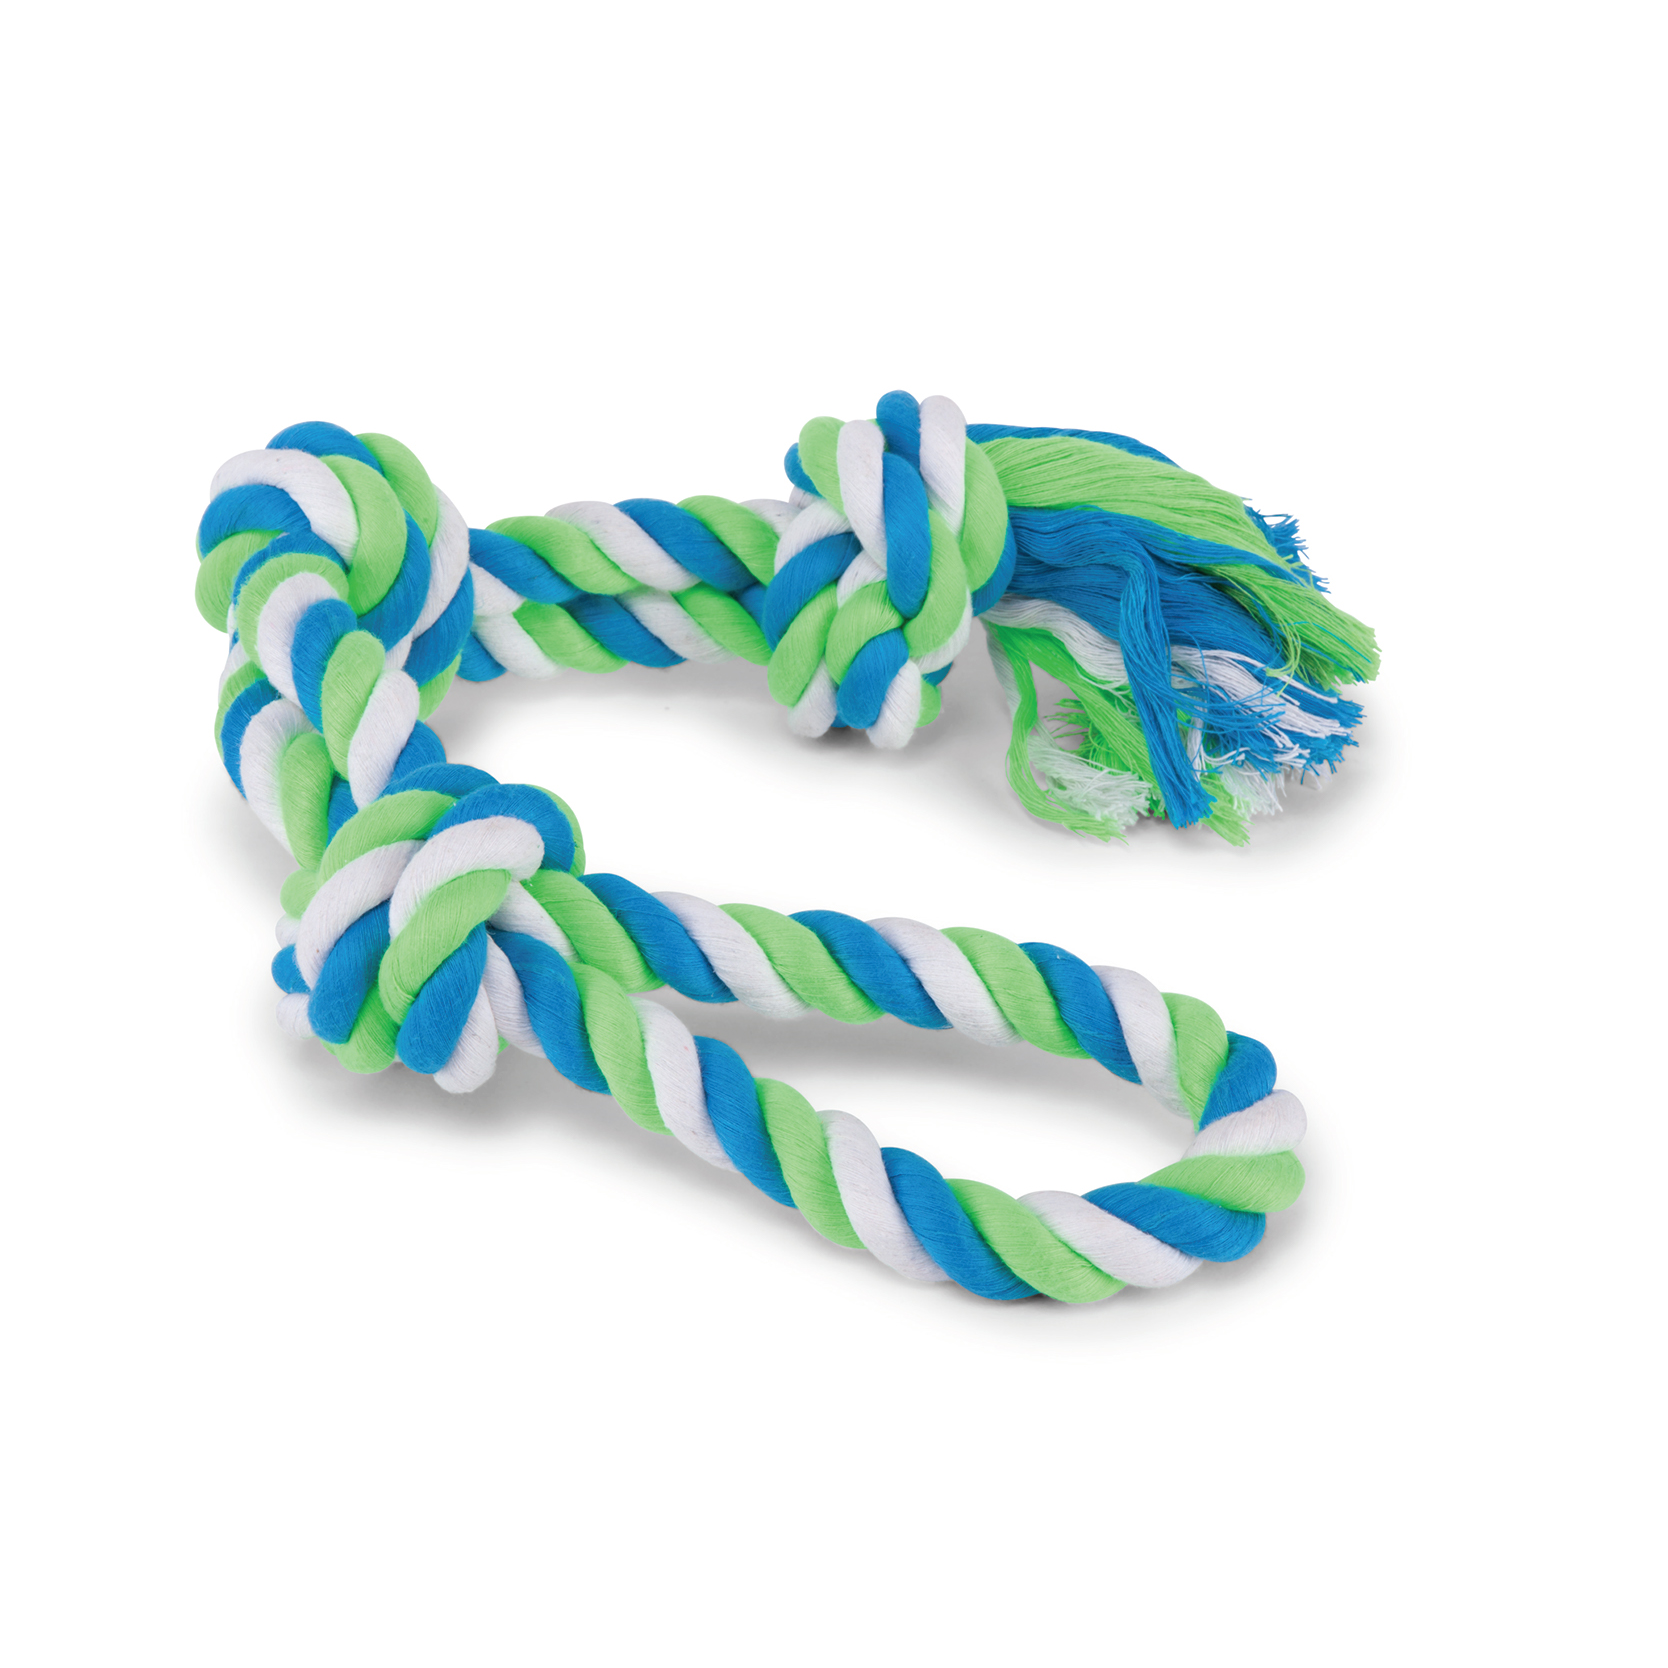 Kazoo Twisted Rope 3 Knot Tug X-Large Dog Toy